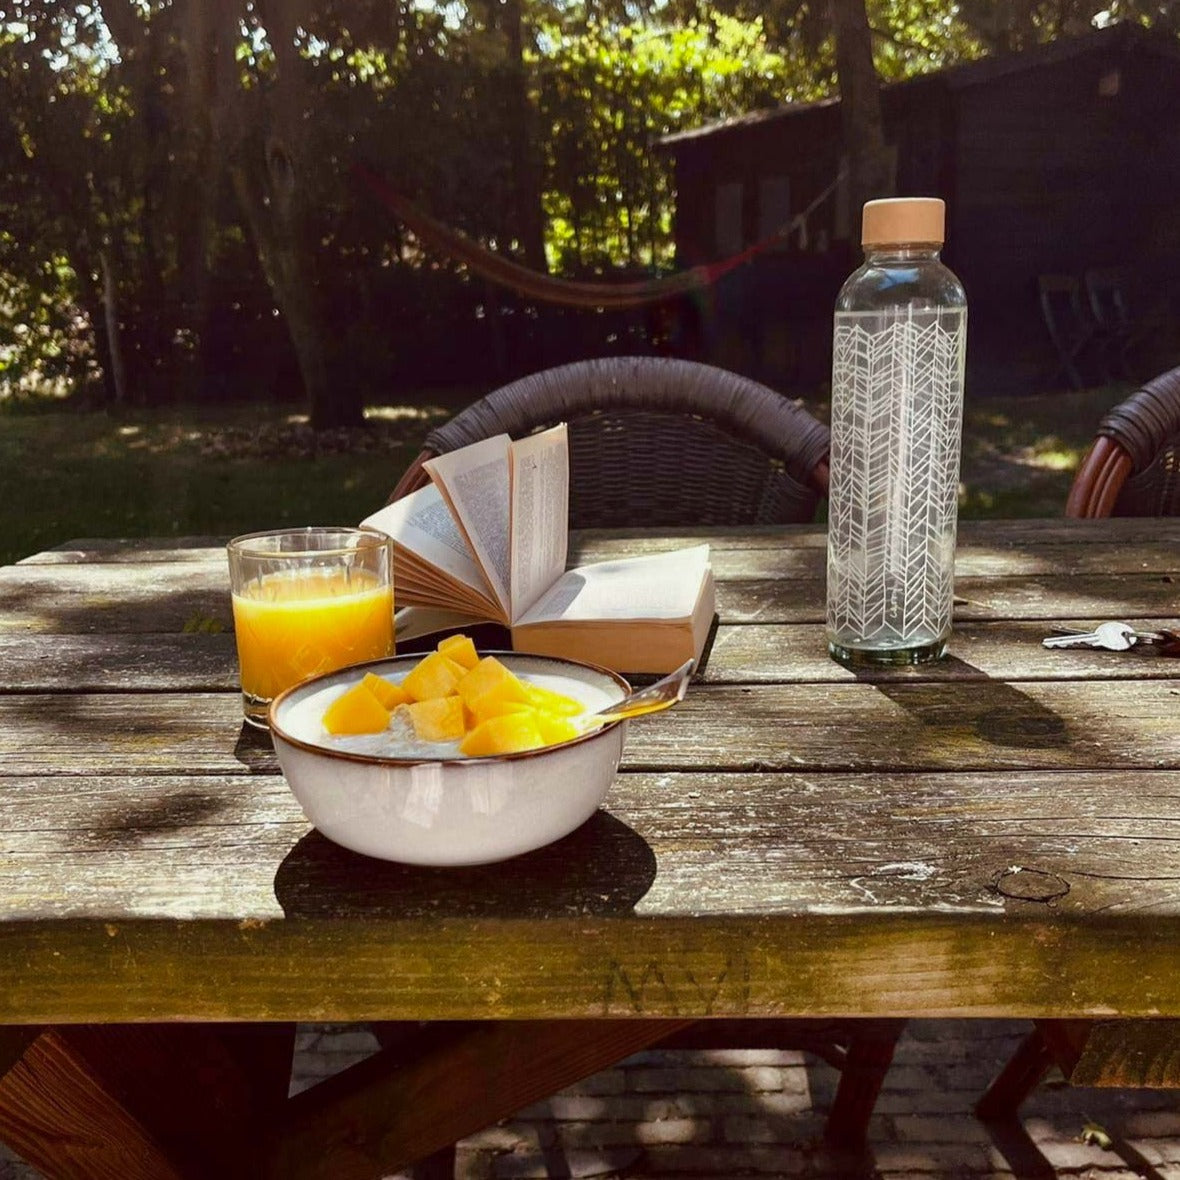 Structure of Life CARRY Trinkflasche mit elegantem weißen Design am gemütlichen Frühstückstisch